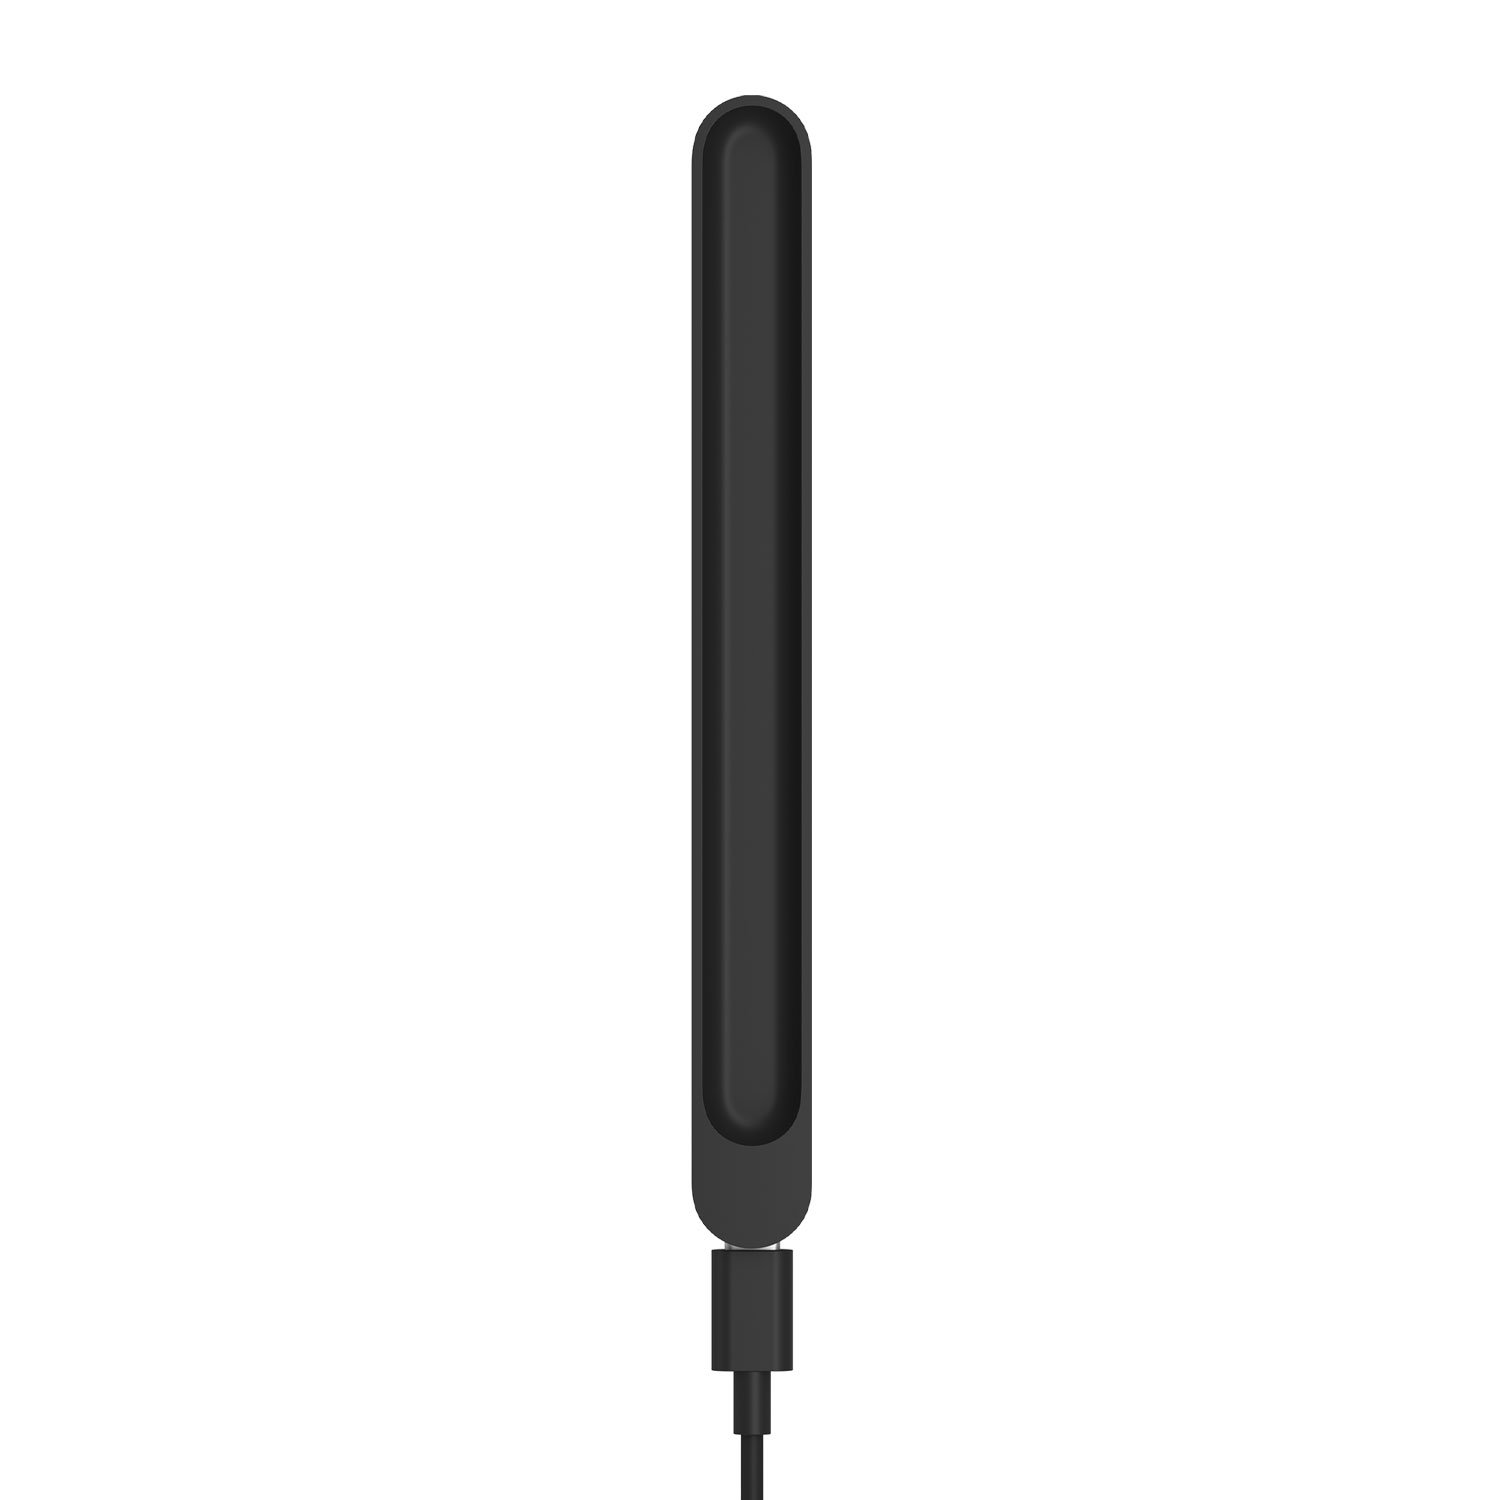 شارژر قلم سرفیس مایکروسافت مناسب برای اسلیم پن 1 و 2 مدل  Microsoft Surface Charger For Slim Pen , Slim Pen 2